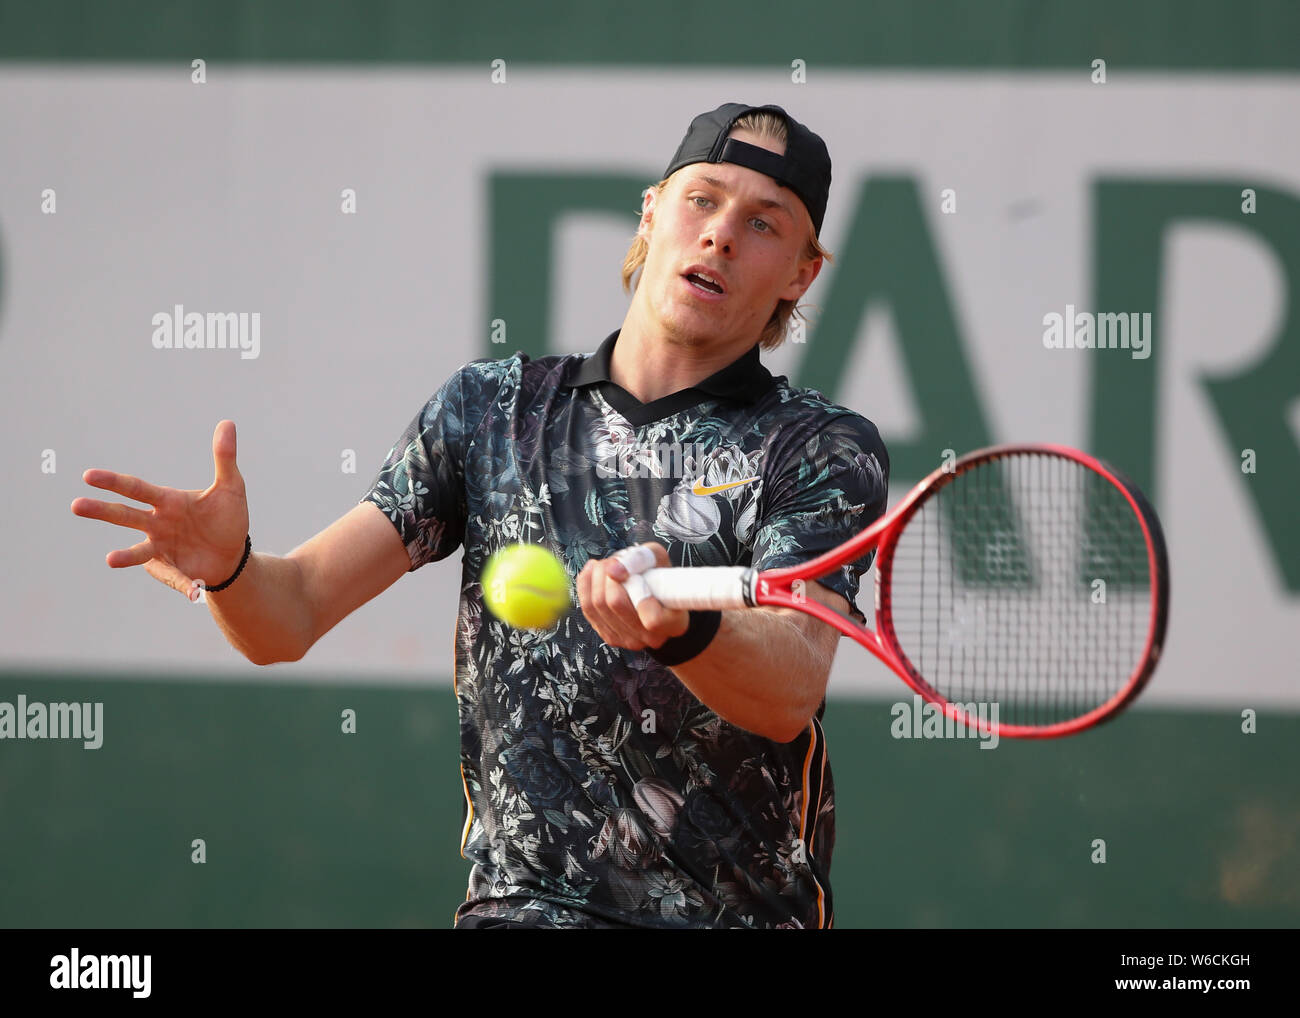 Canadian giocatore di tennis Denis Shapovalov giocando diretti shot in French Open 2019 Torneo di tennis, Parigi, Francia Foto Stock